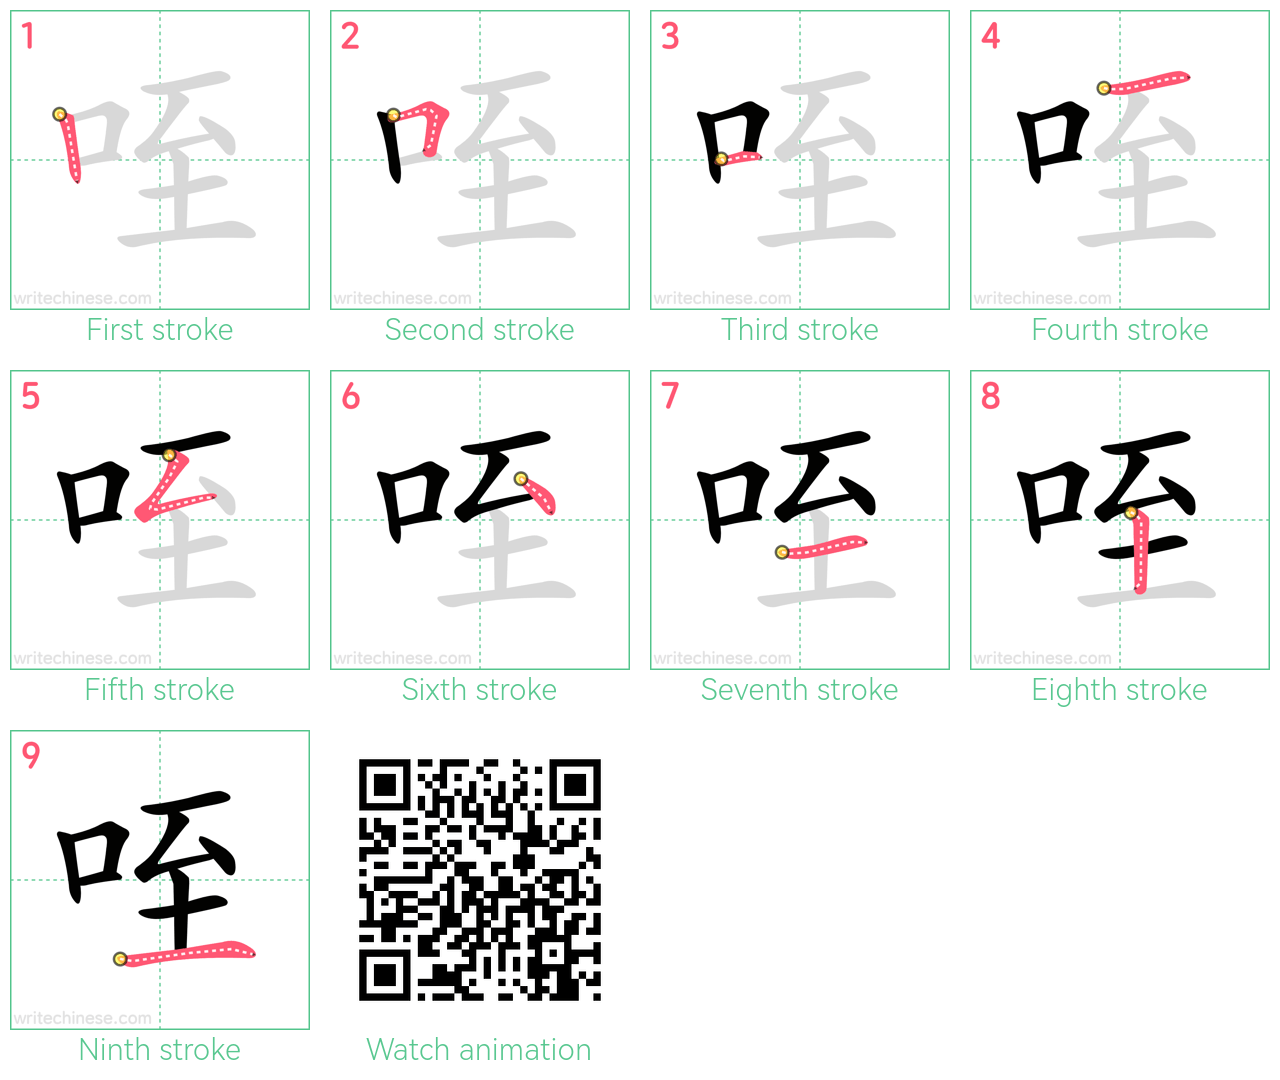 咥 step-by-step stroke order diagrams